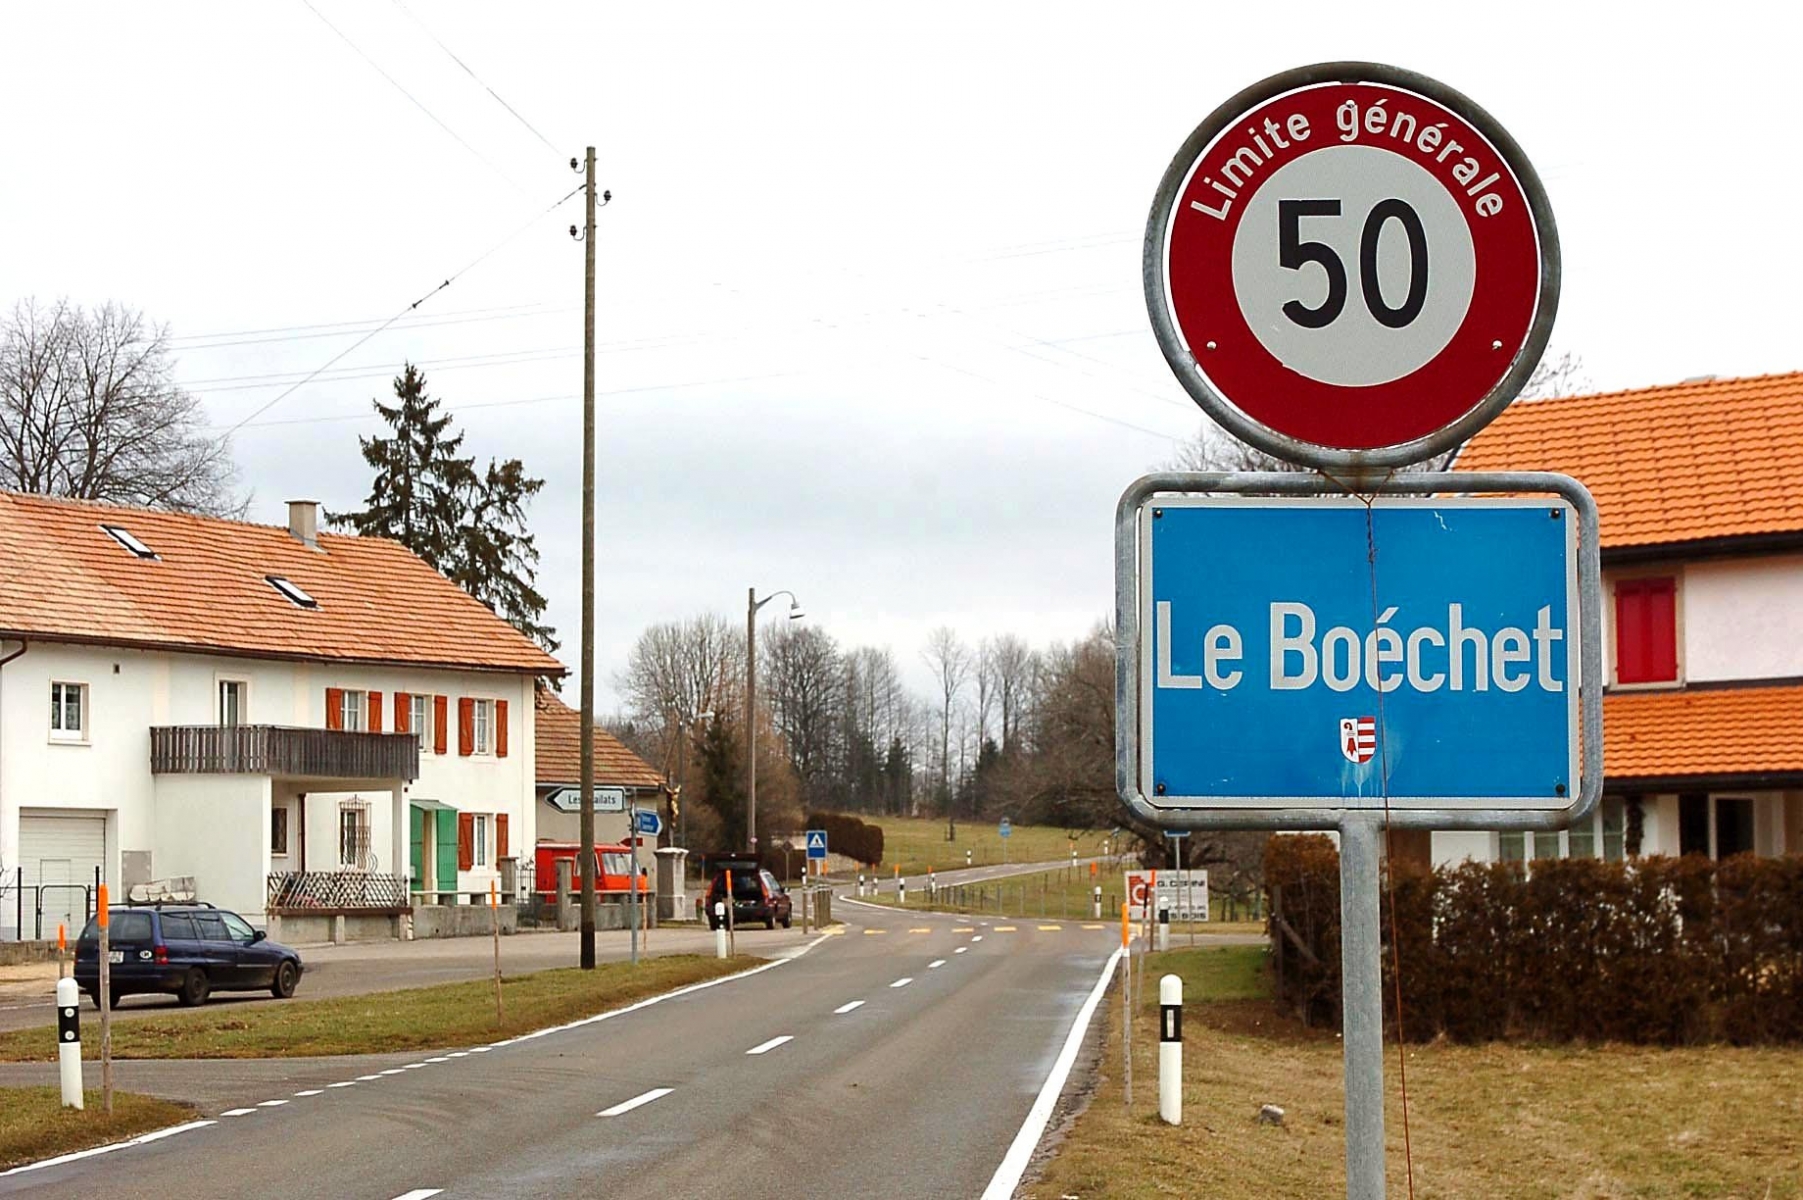 Vue partielle du Boechet

Le Boechet, le 16 janvier 2007
Photo: Richard Leuenberger LE BOECHET